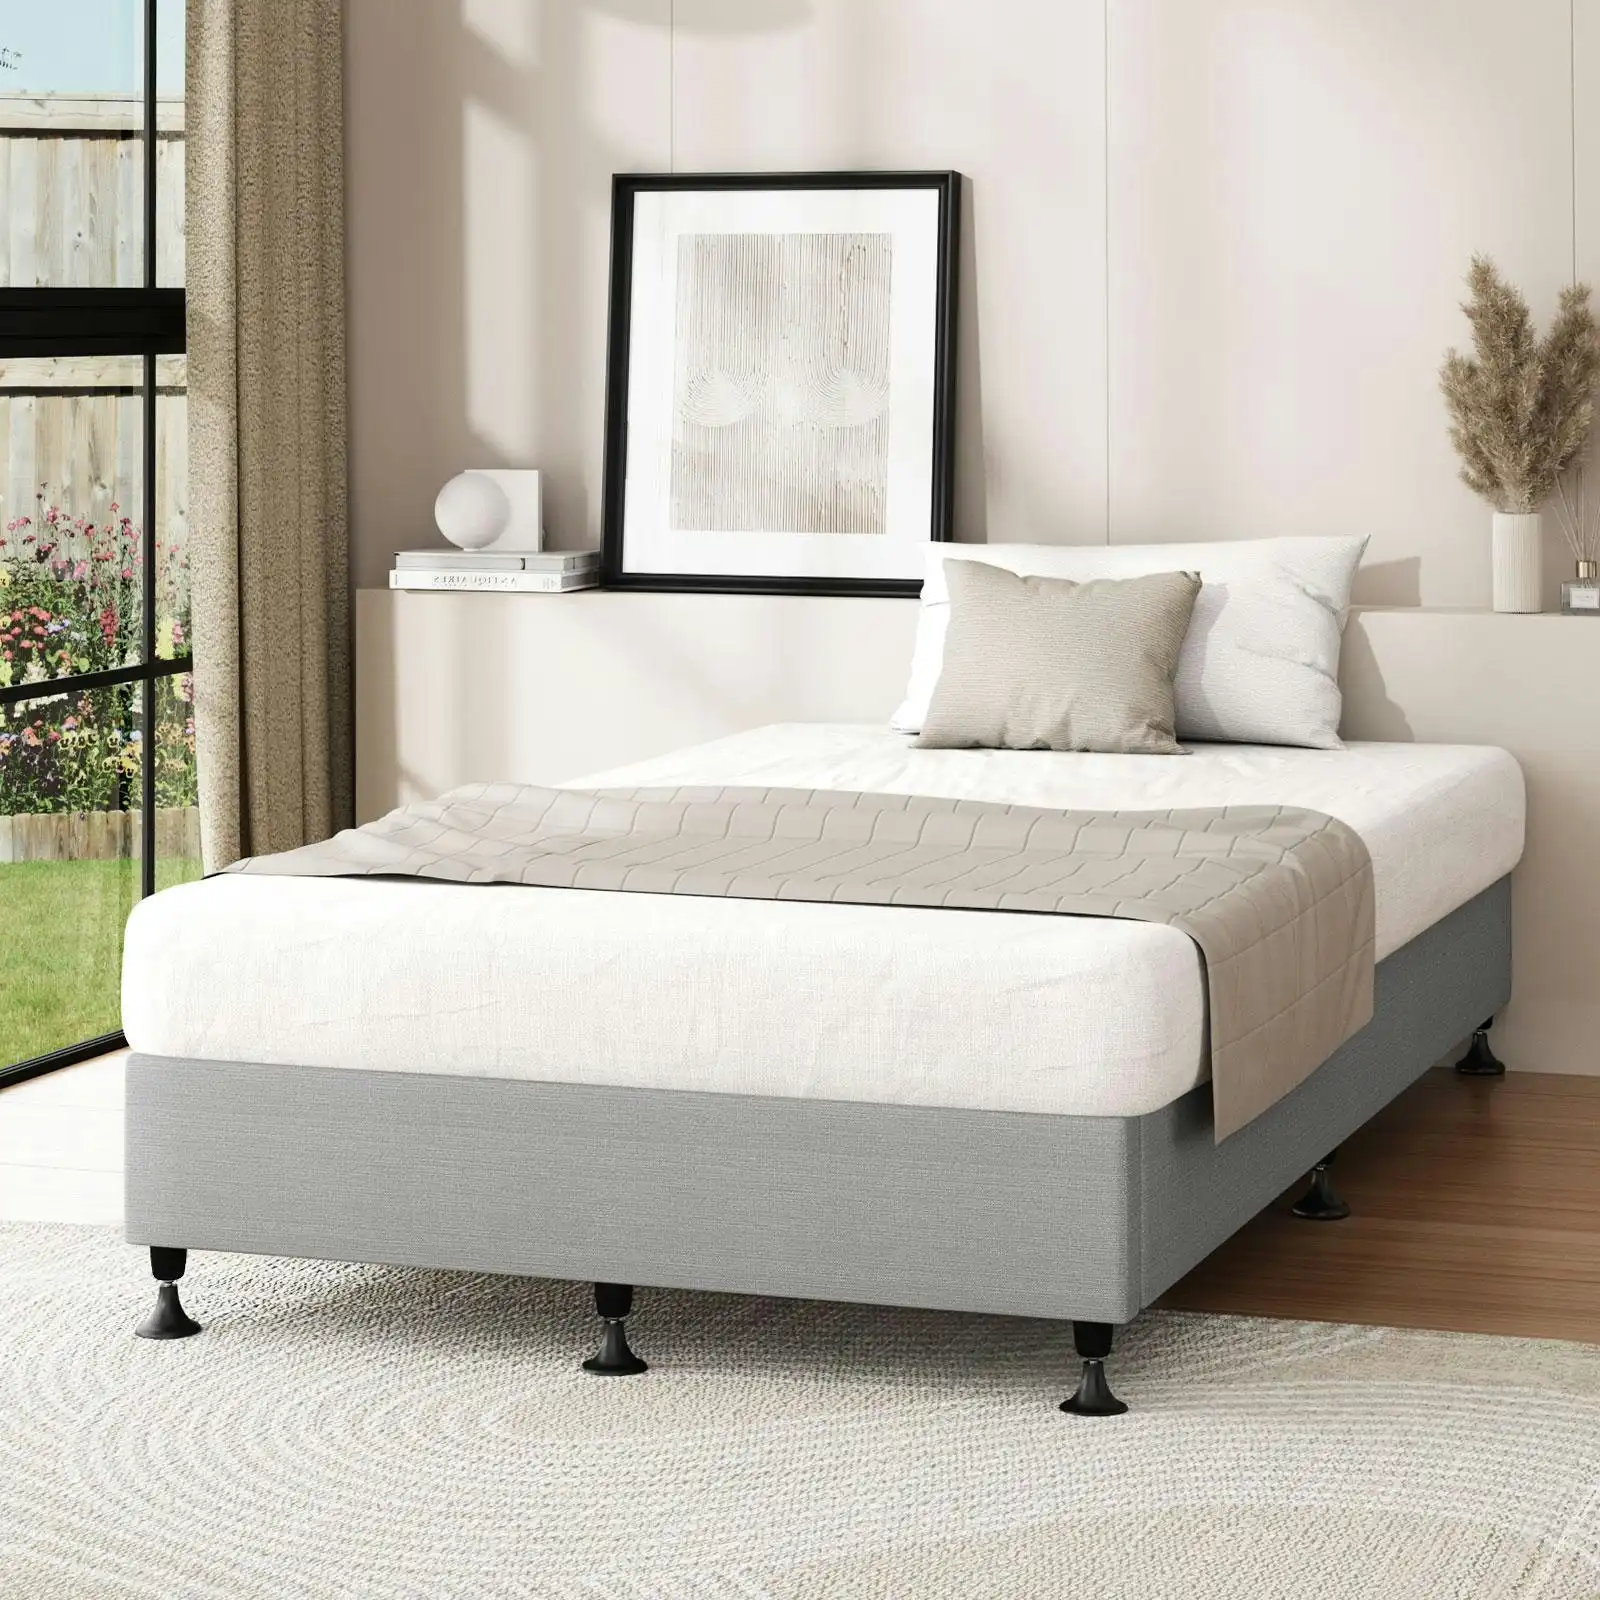 Oikiture Bed Frame Single Size Bed Base Platform Grey